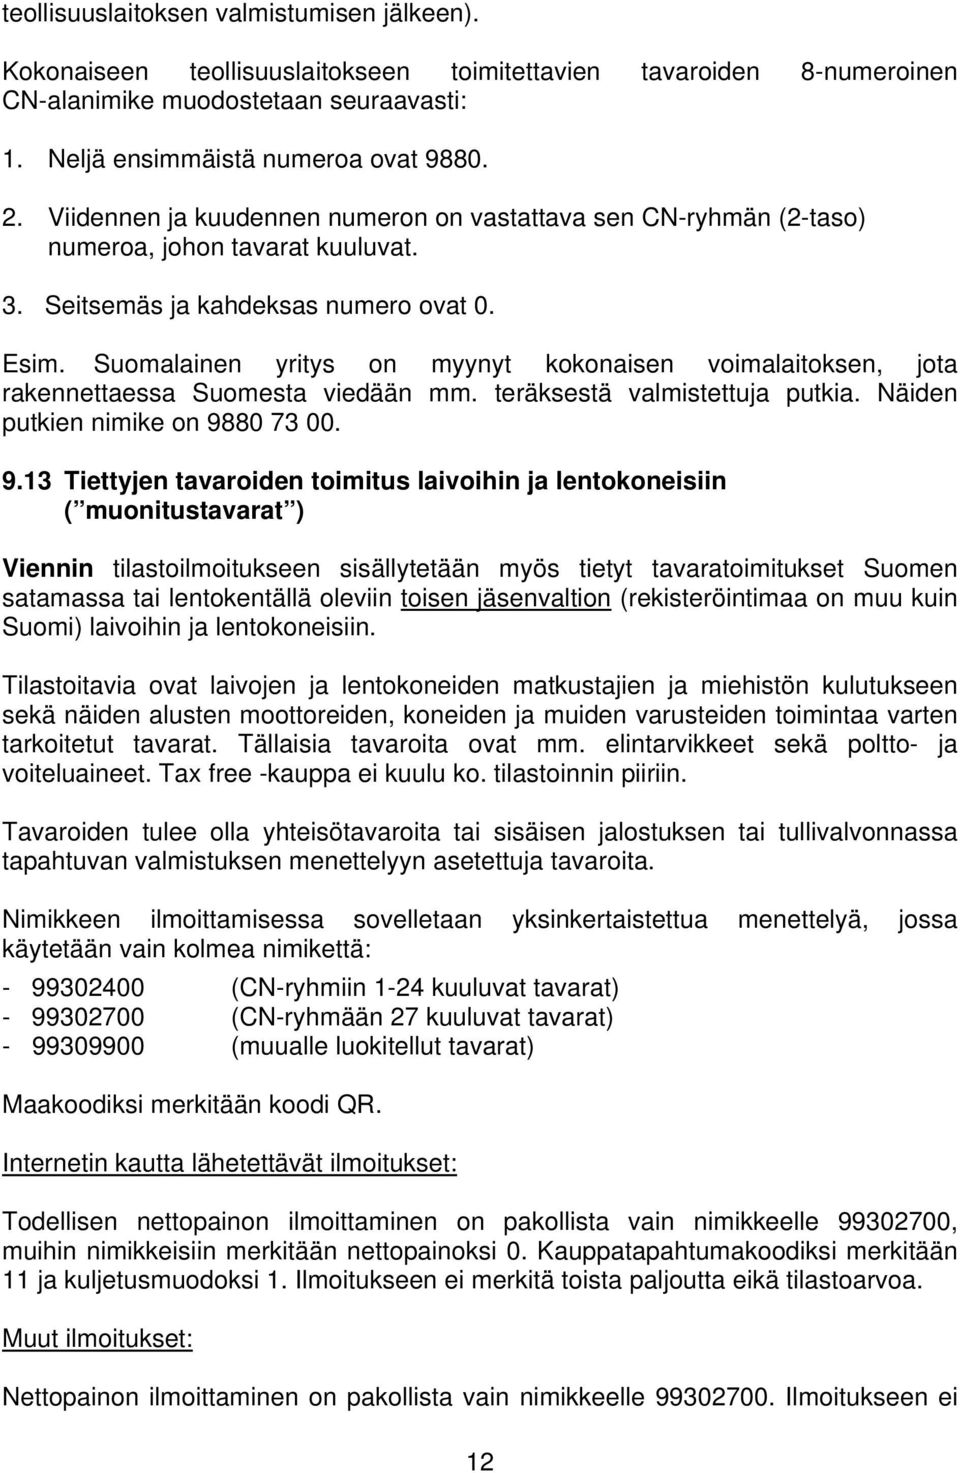 Suomalainen yritys on myynyt kokonaisen voimalaitoksen, jota rakennettaessa Suomesta viedään mm. teräksestä valmistettuja putkia. Näiden putkien nimike on 98